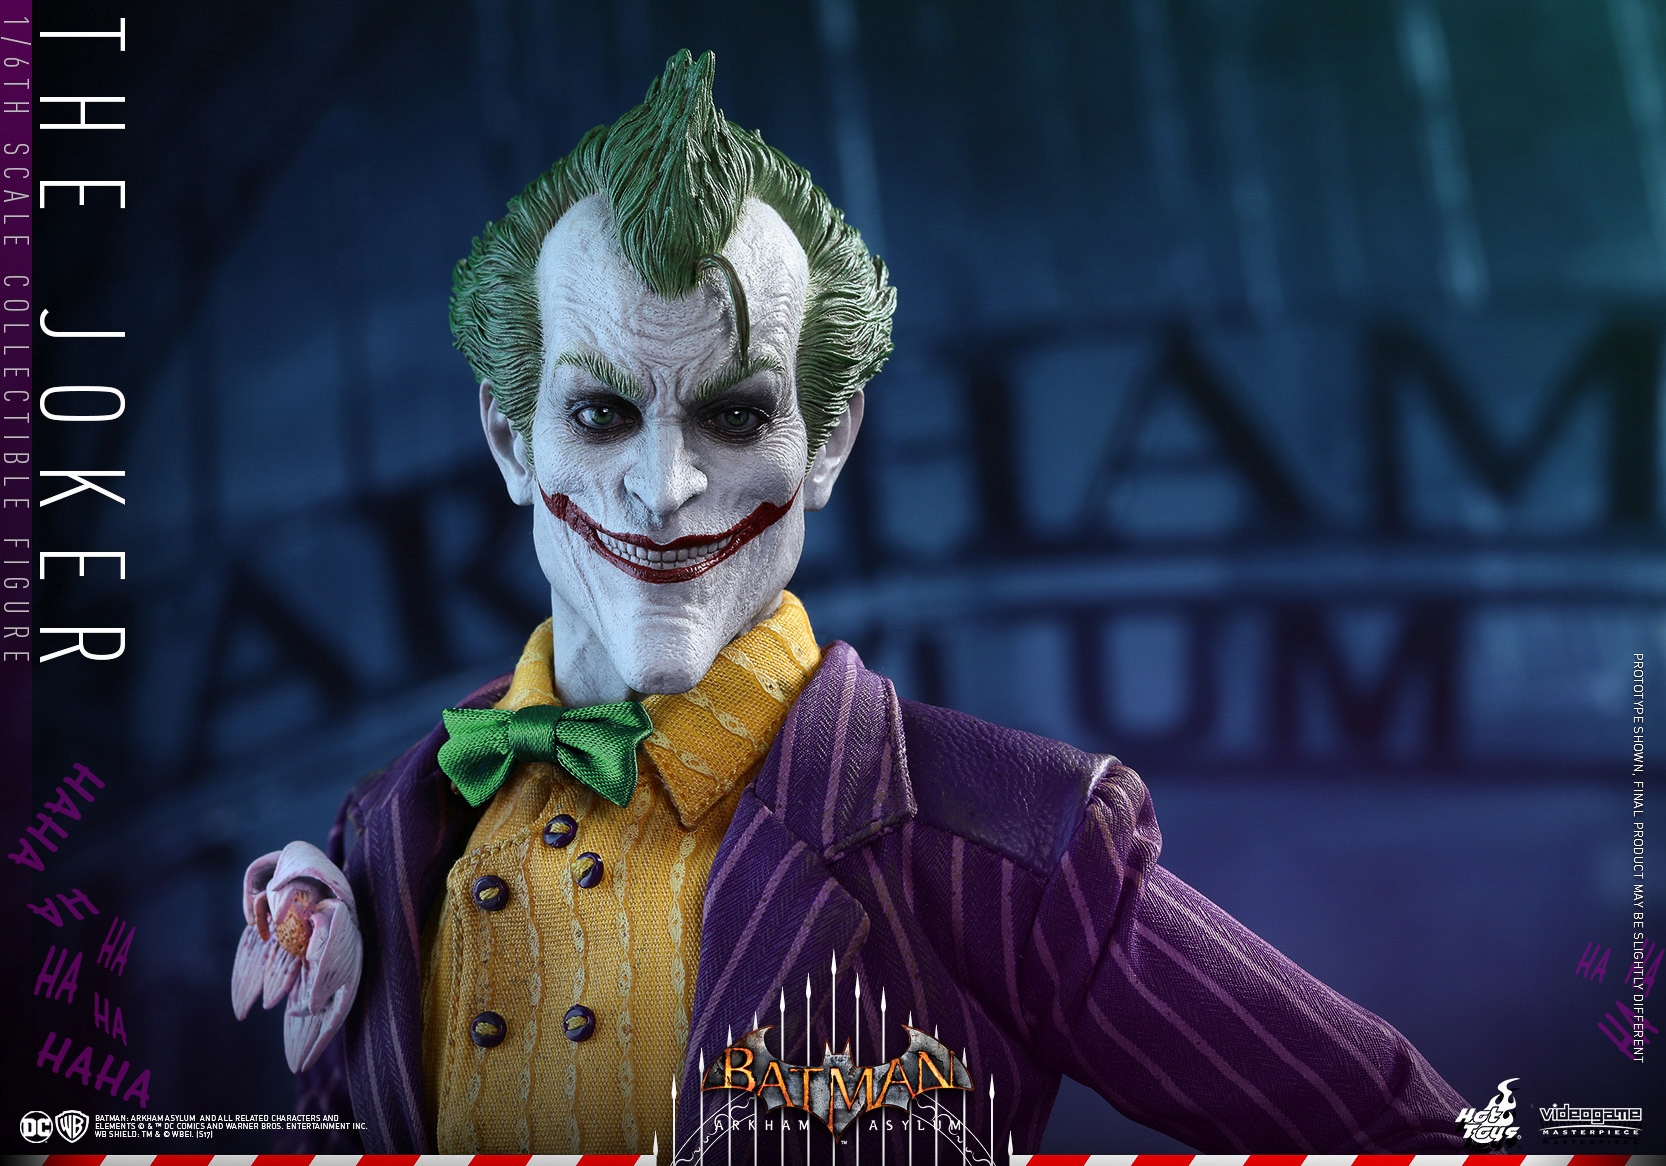 Hot-Toys-Batman-Arkham-Asylum-Joker-Collectible-Figure-021.jpg